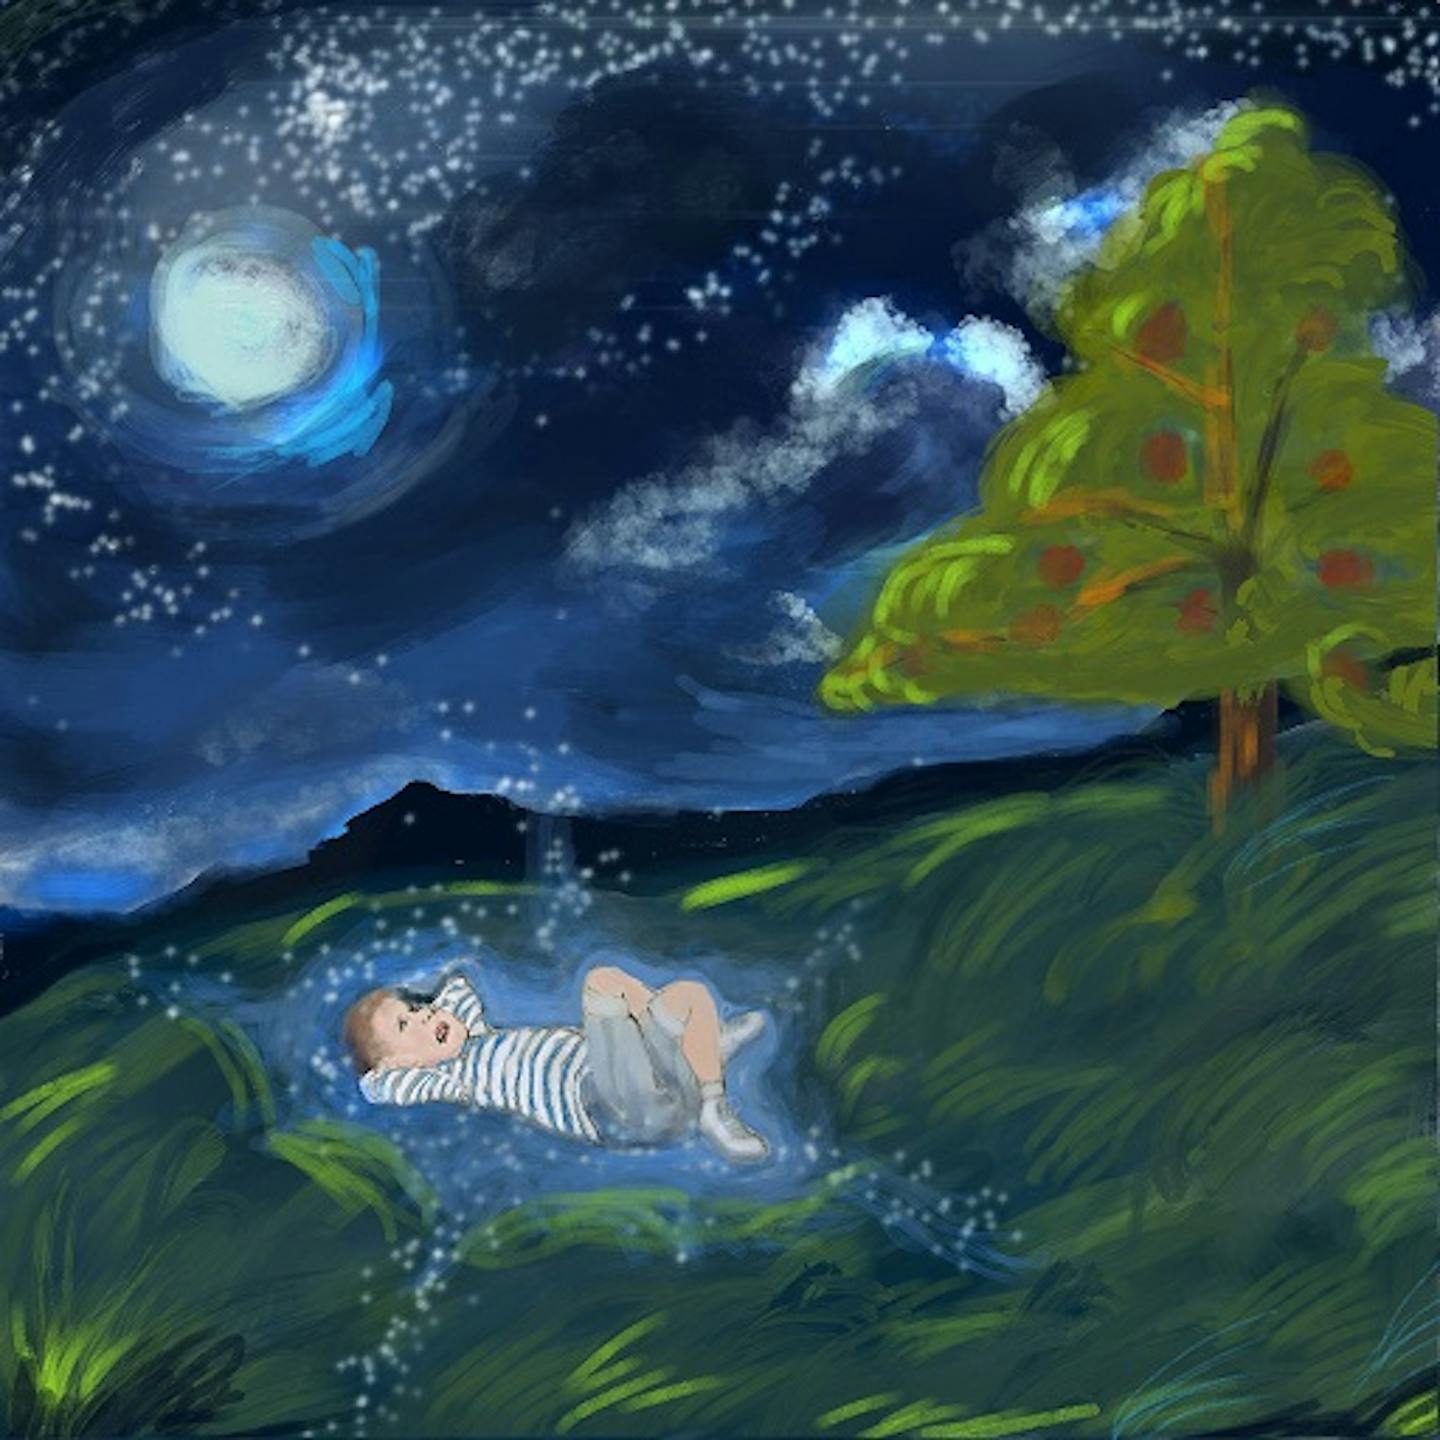 لوحة لطفل يحدق في النجوم